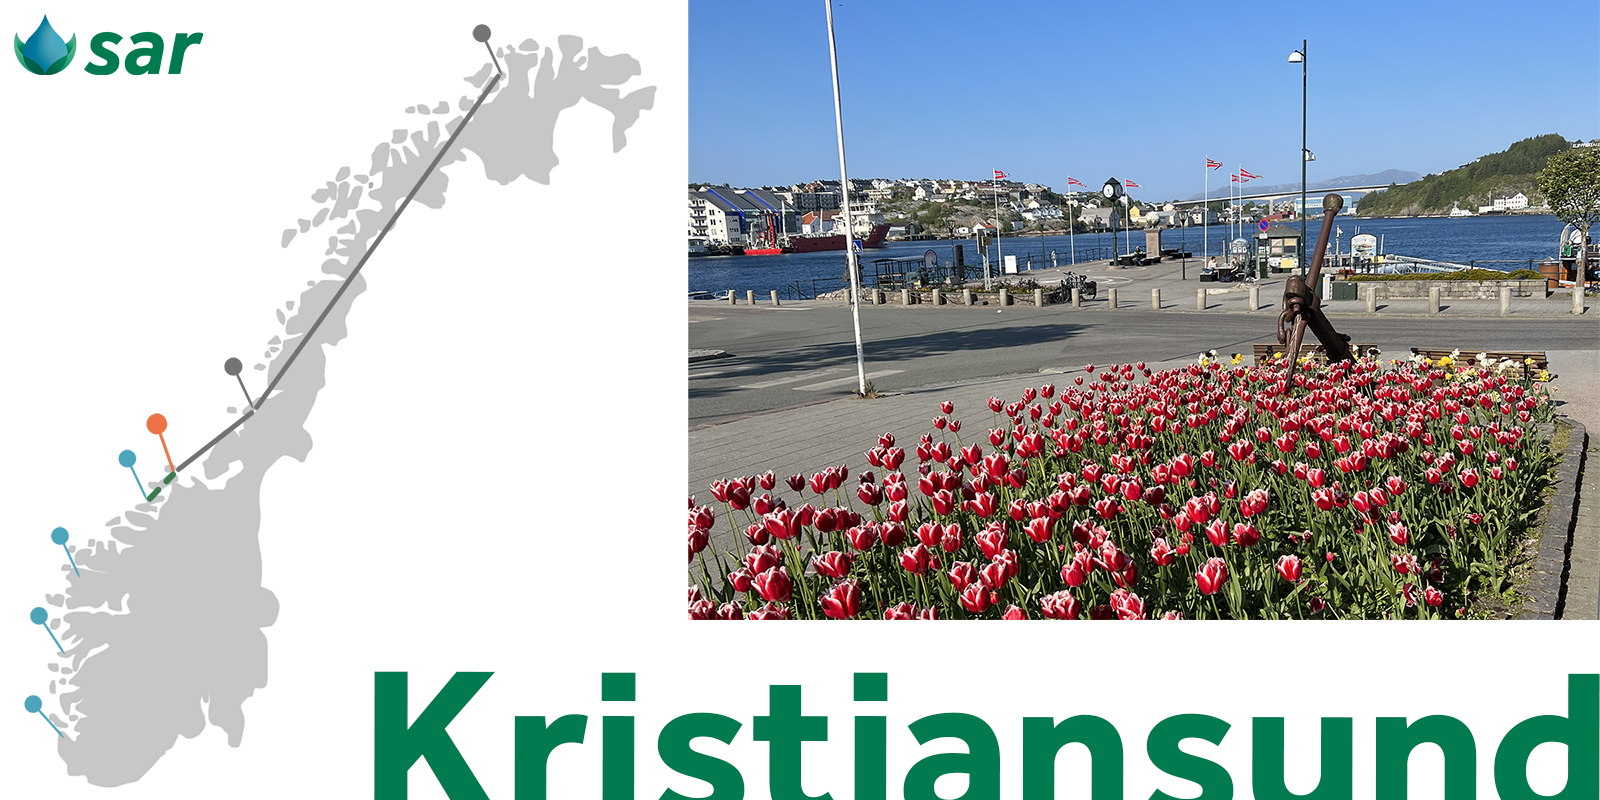 Kristiansund featured